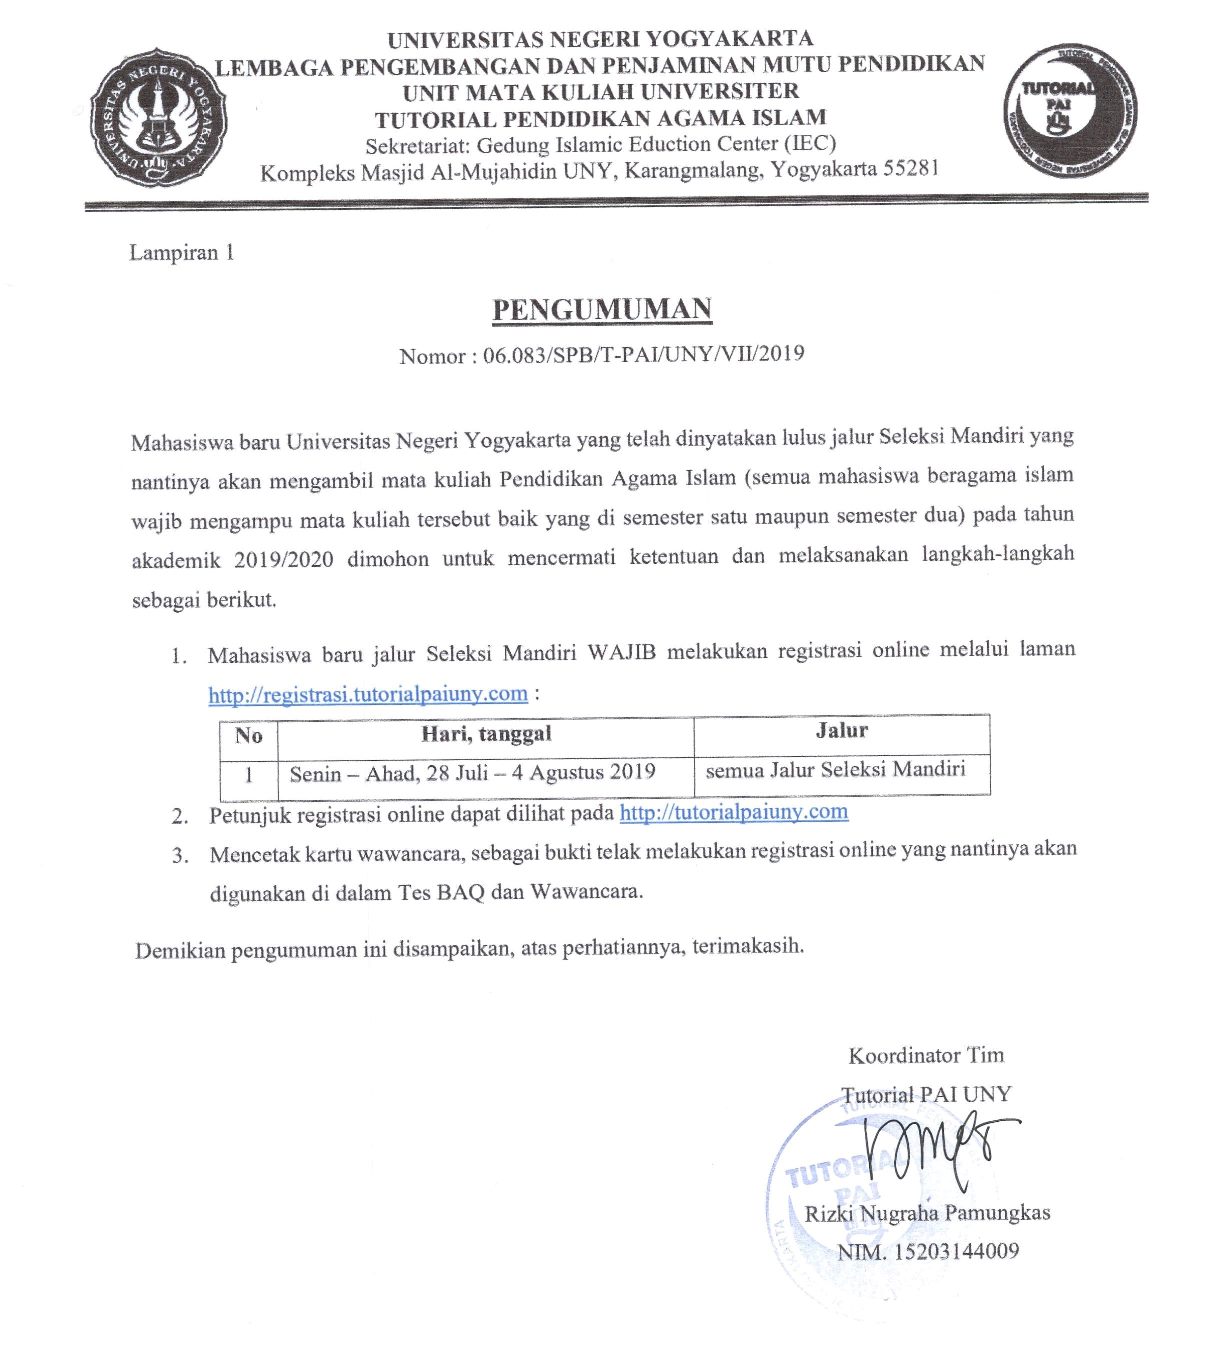 PENGUMUMAN REGISTRASI ONLINE TUTORIAL PAI MAHASISWA BARU SELEKSI MANDIRI